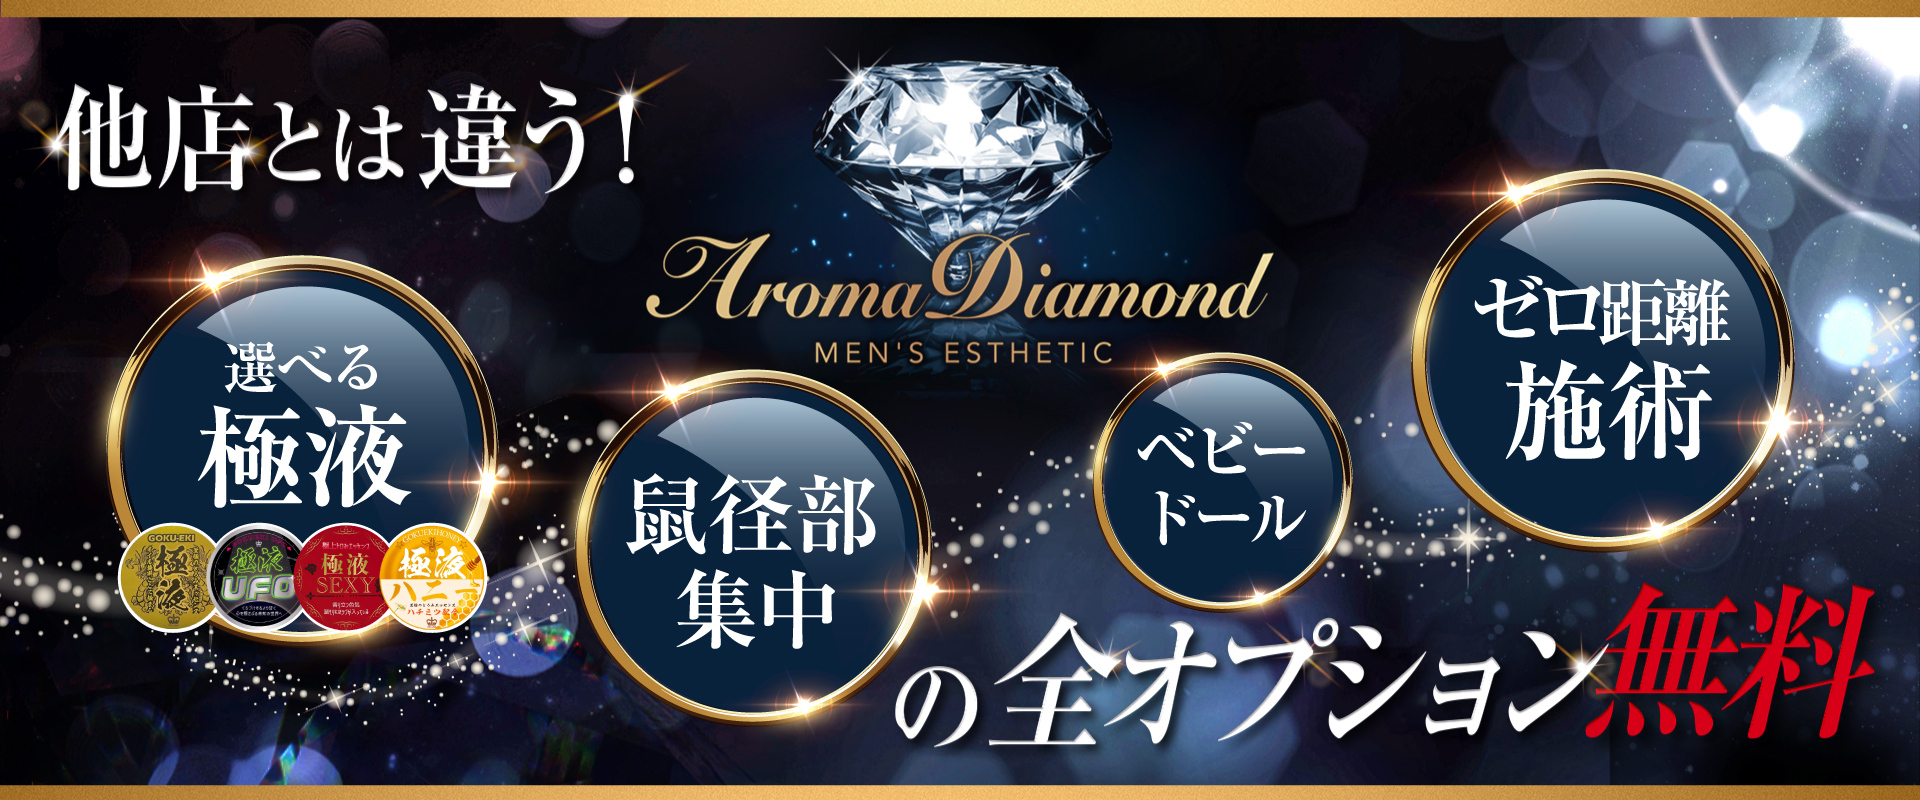 アロマダイヤモンド オフィシャルサイト